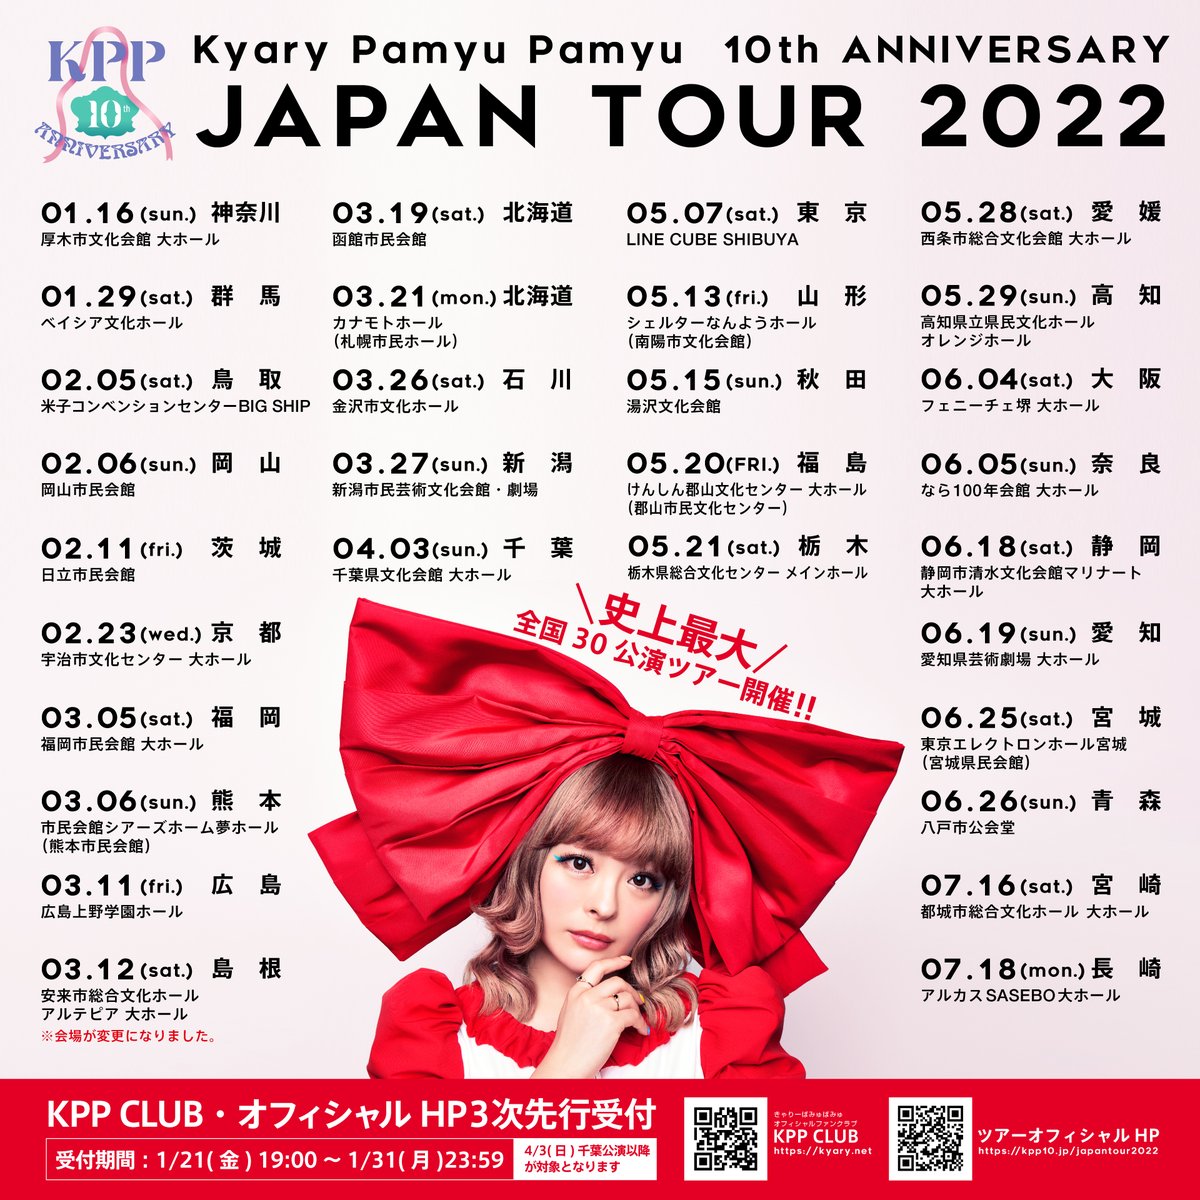 きゃりーぱみゅぱみゅ 10th ANNIVERSARY JAPAN TOUR 2022 CANDY WAVE 島根公演